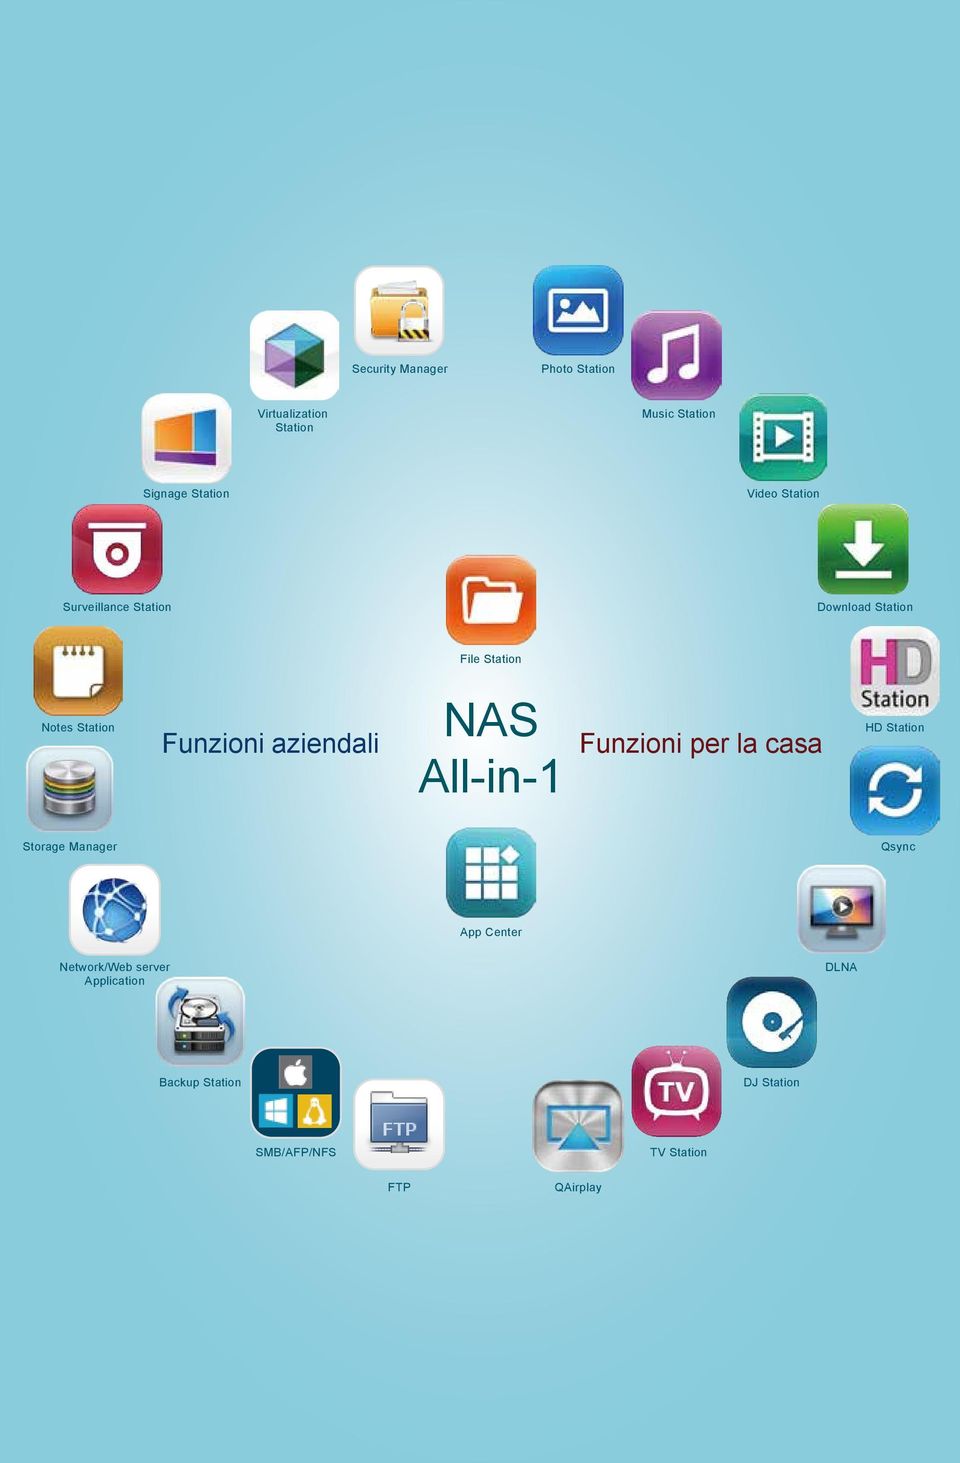 aziendali NAS All-in-1 Funzioni per la casa HD Station Storage Manager Qsync App Center